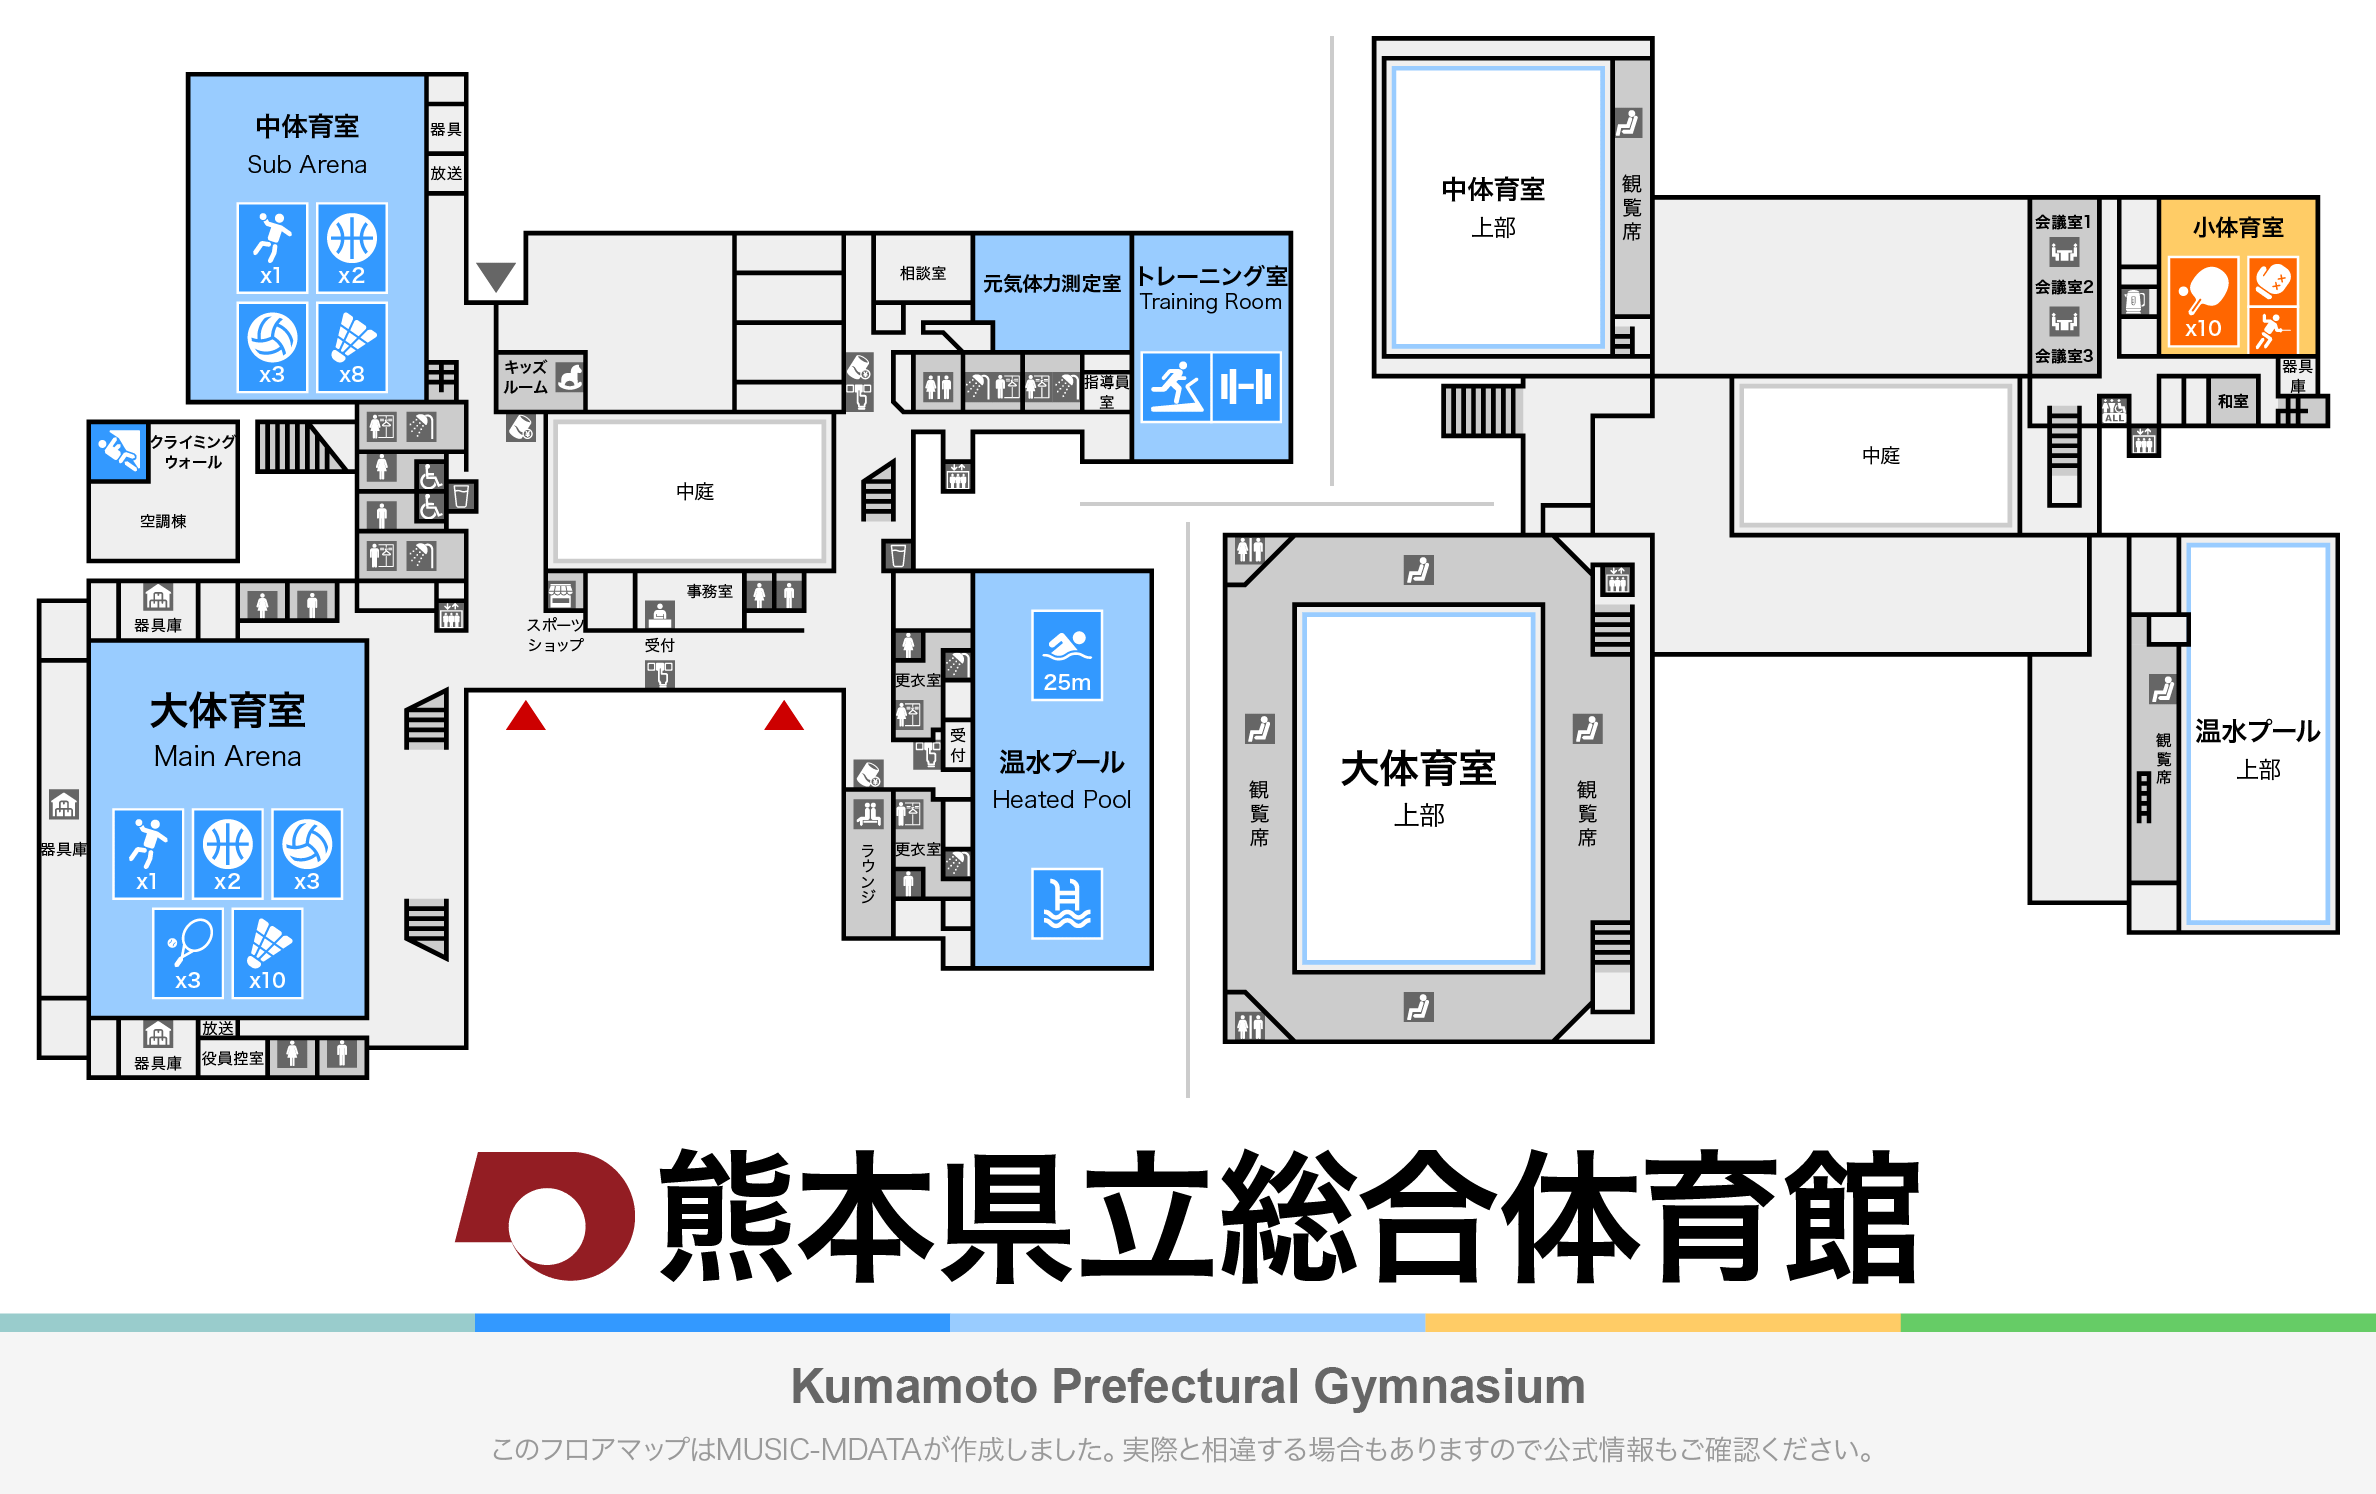 熊本県立総合体育館のフロアマップ・体育館